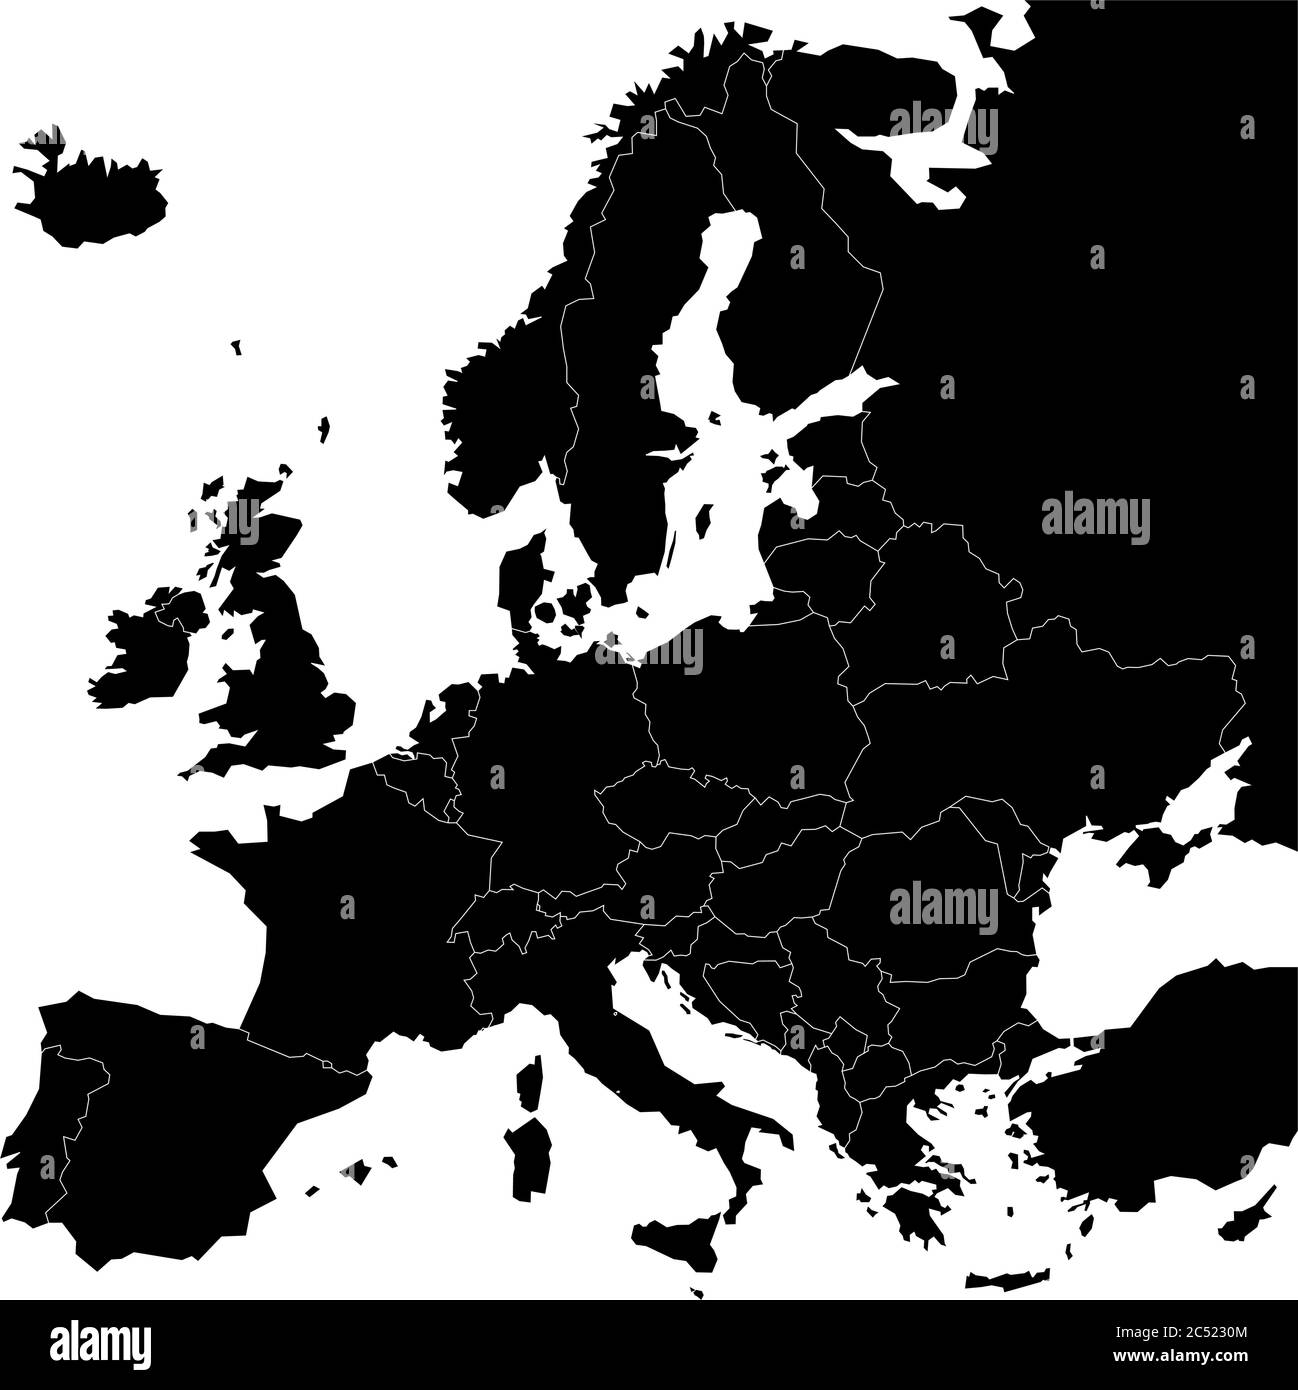 Mappa dell'Europa con paesi sovrani, ministeri e Kosovo inclusi. Mappa vettoriale semplificata in colore nero isolata su sfondo bianco. Illustrazione Vettoriale